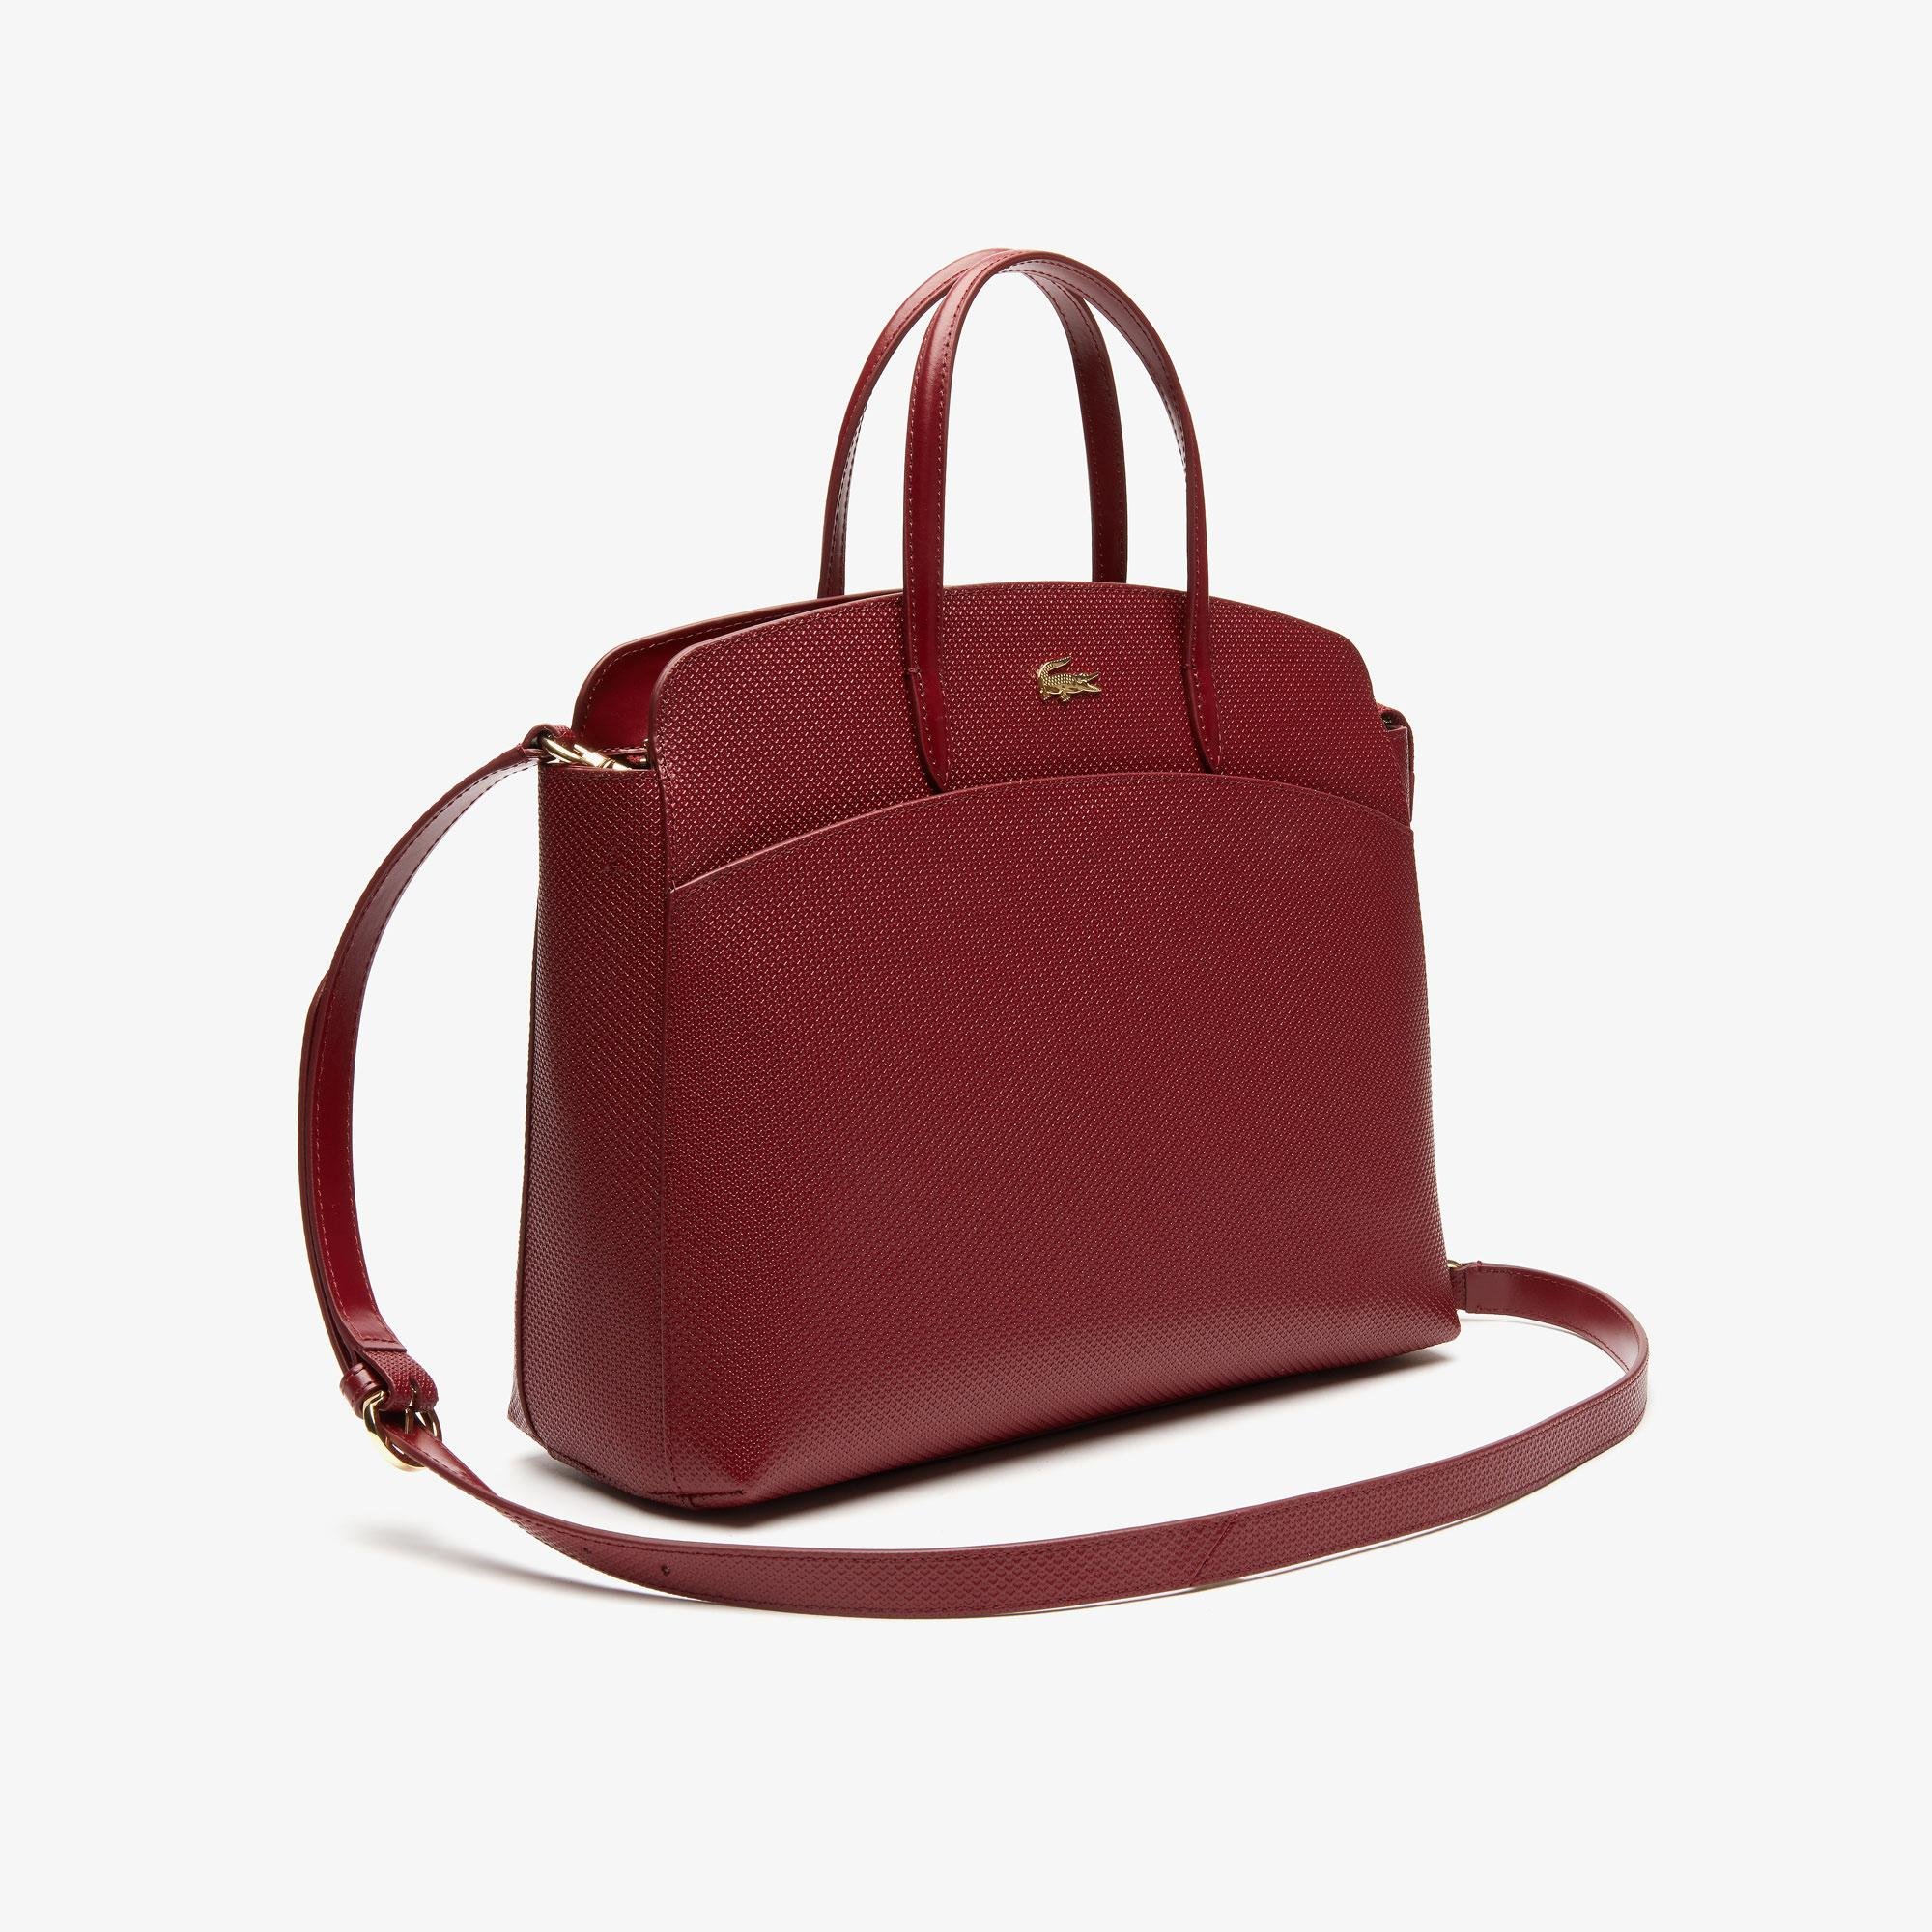 Lacoste Women's Chantaco Piqué Leather Zip Pocket Tote Bag